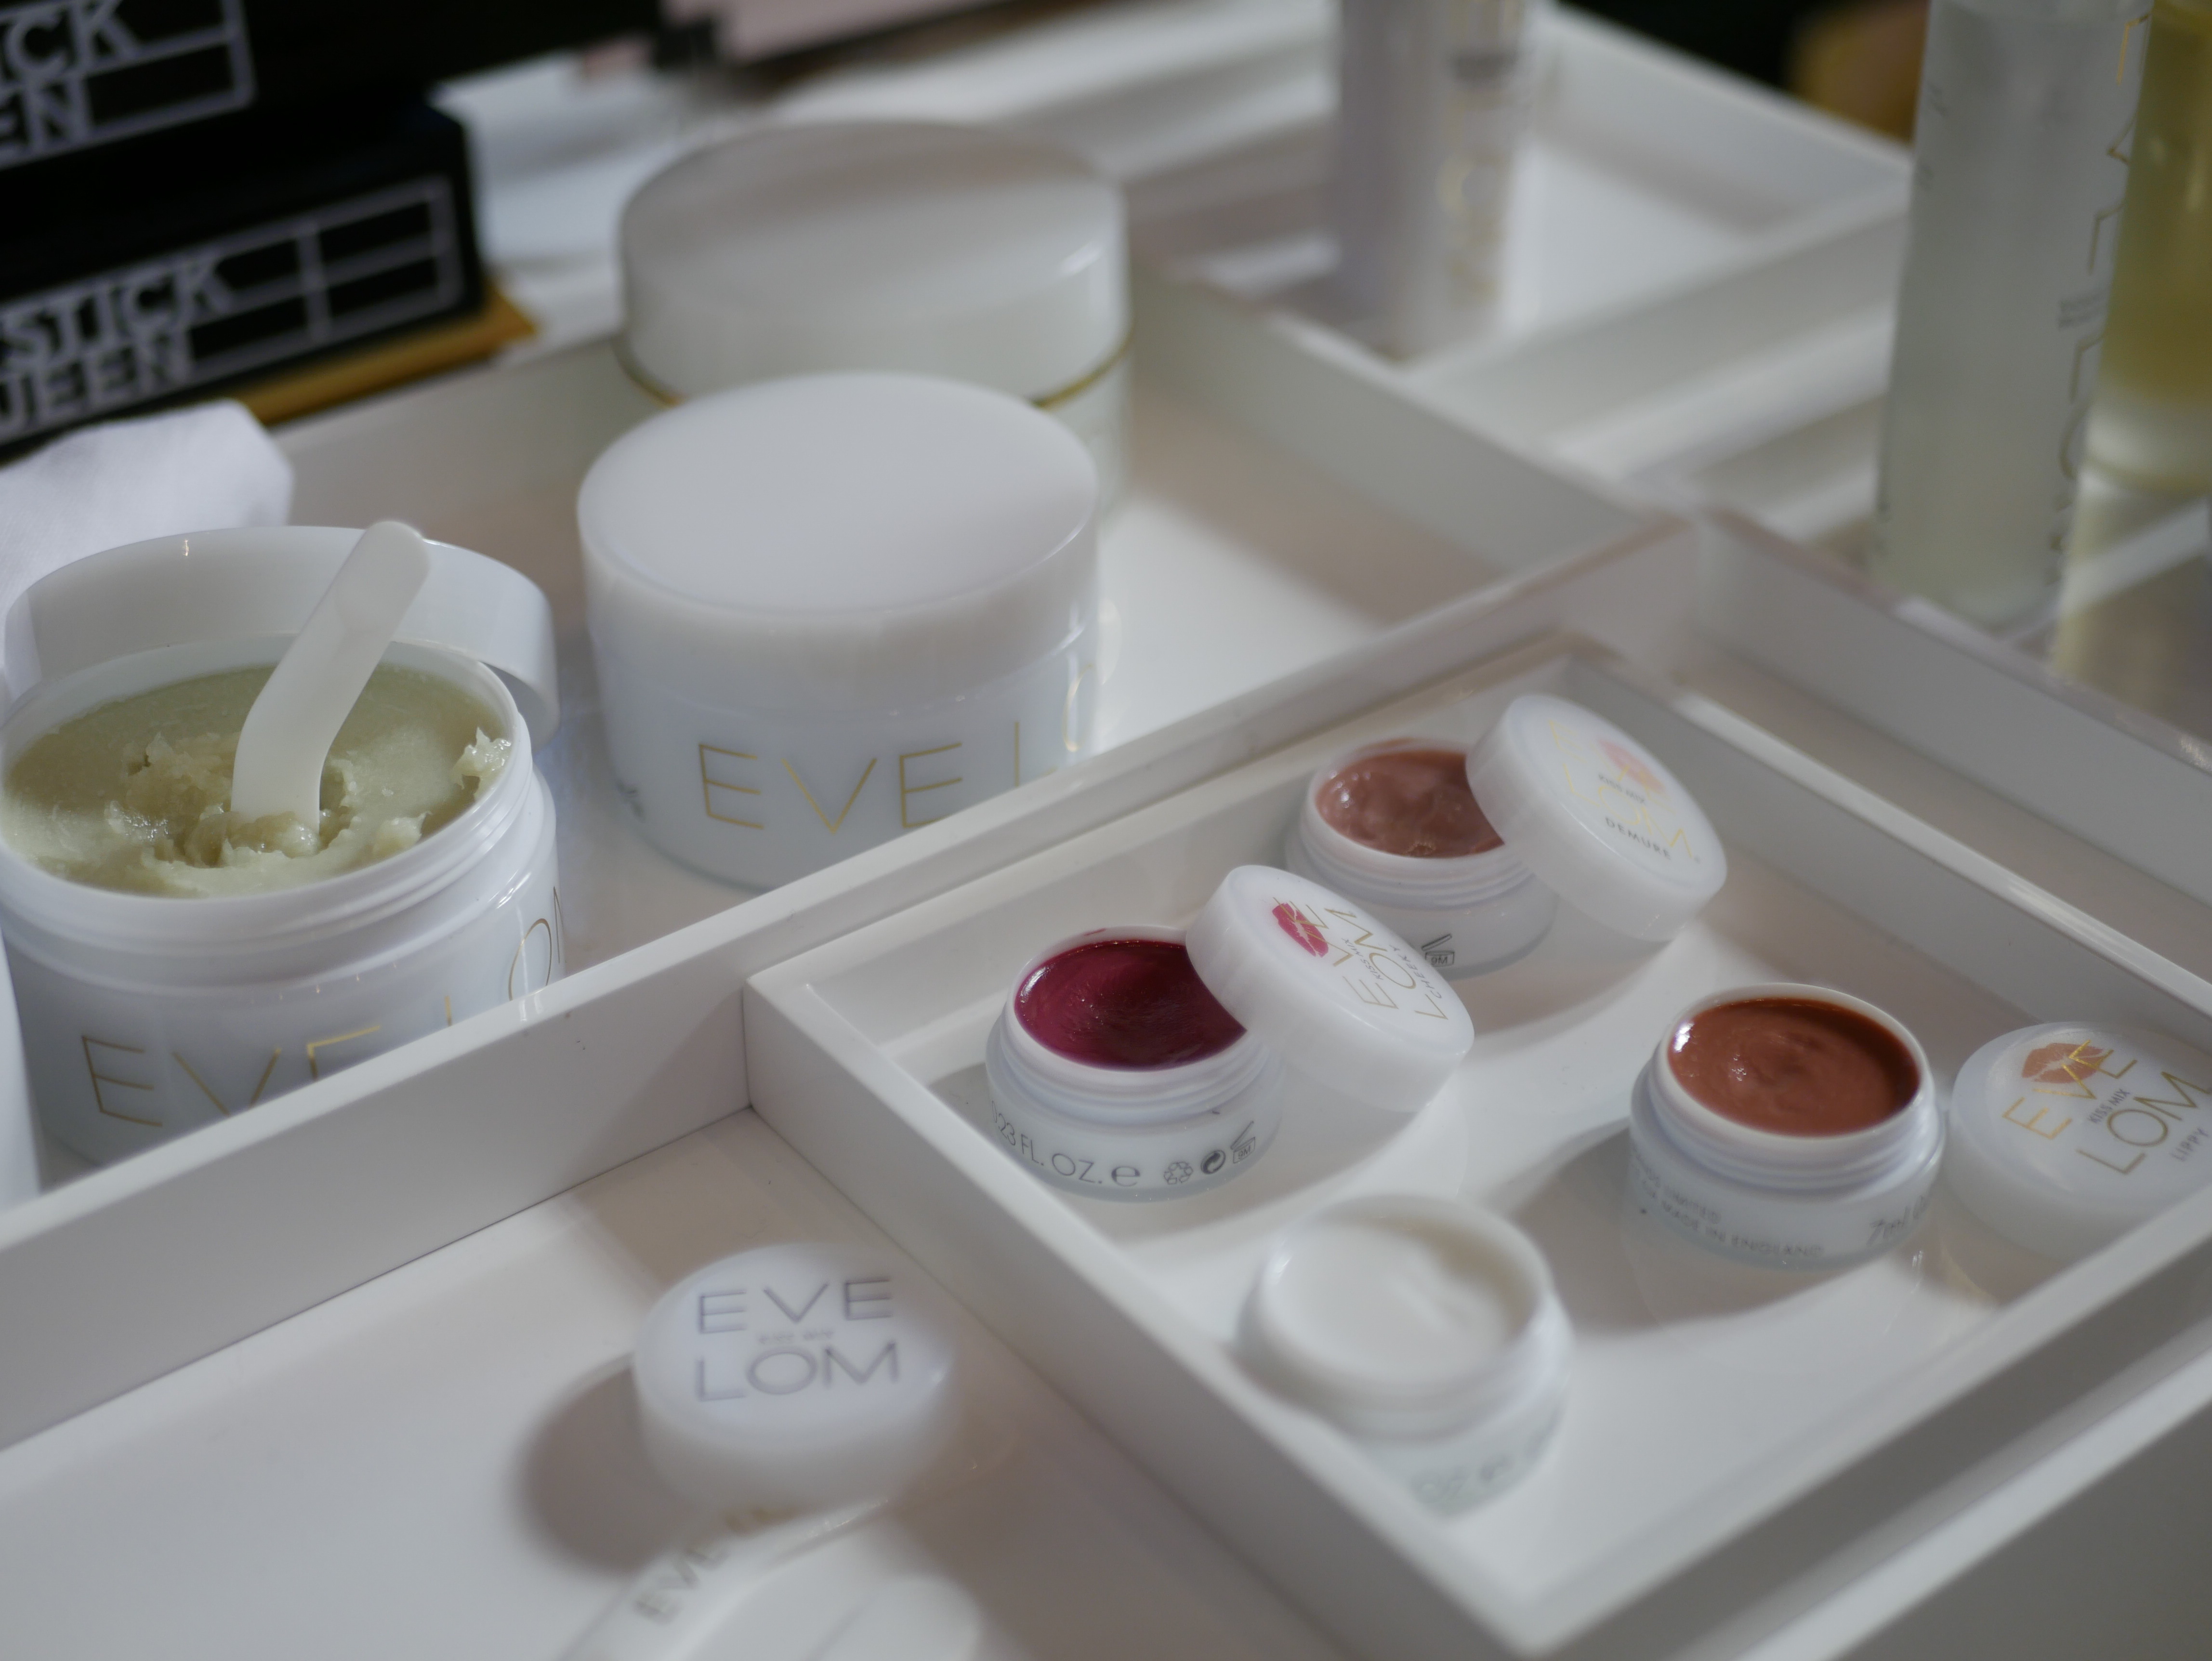 Eve Lom visade upp pigmentstarka multiprodukter i sin monter